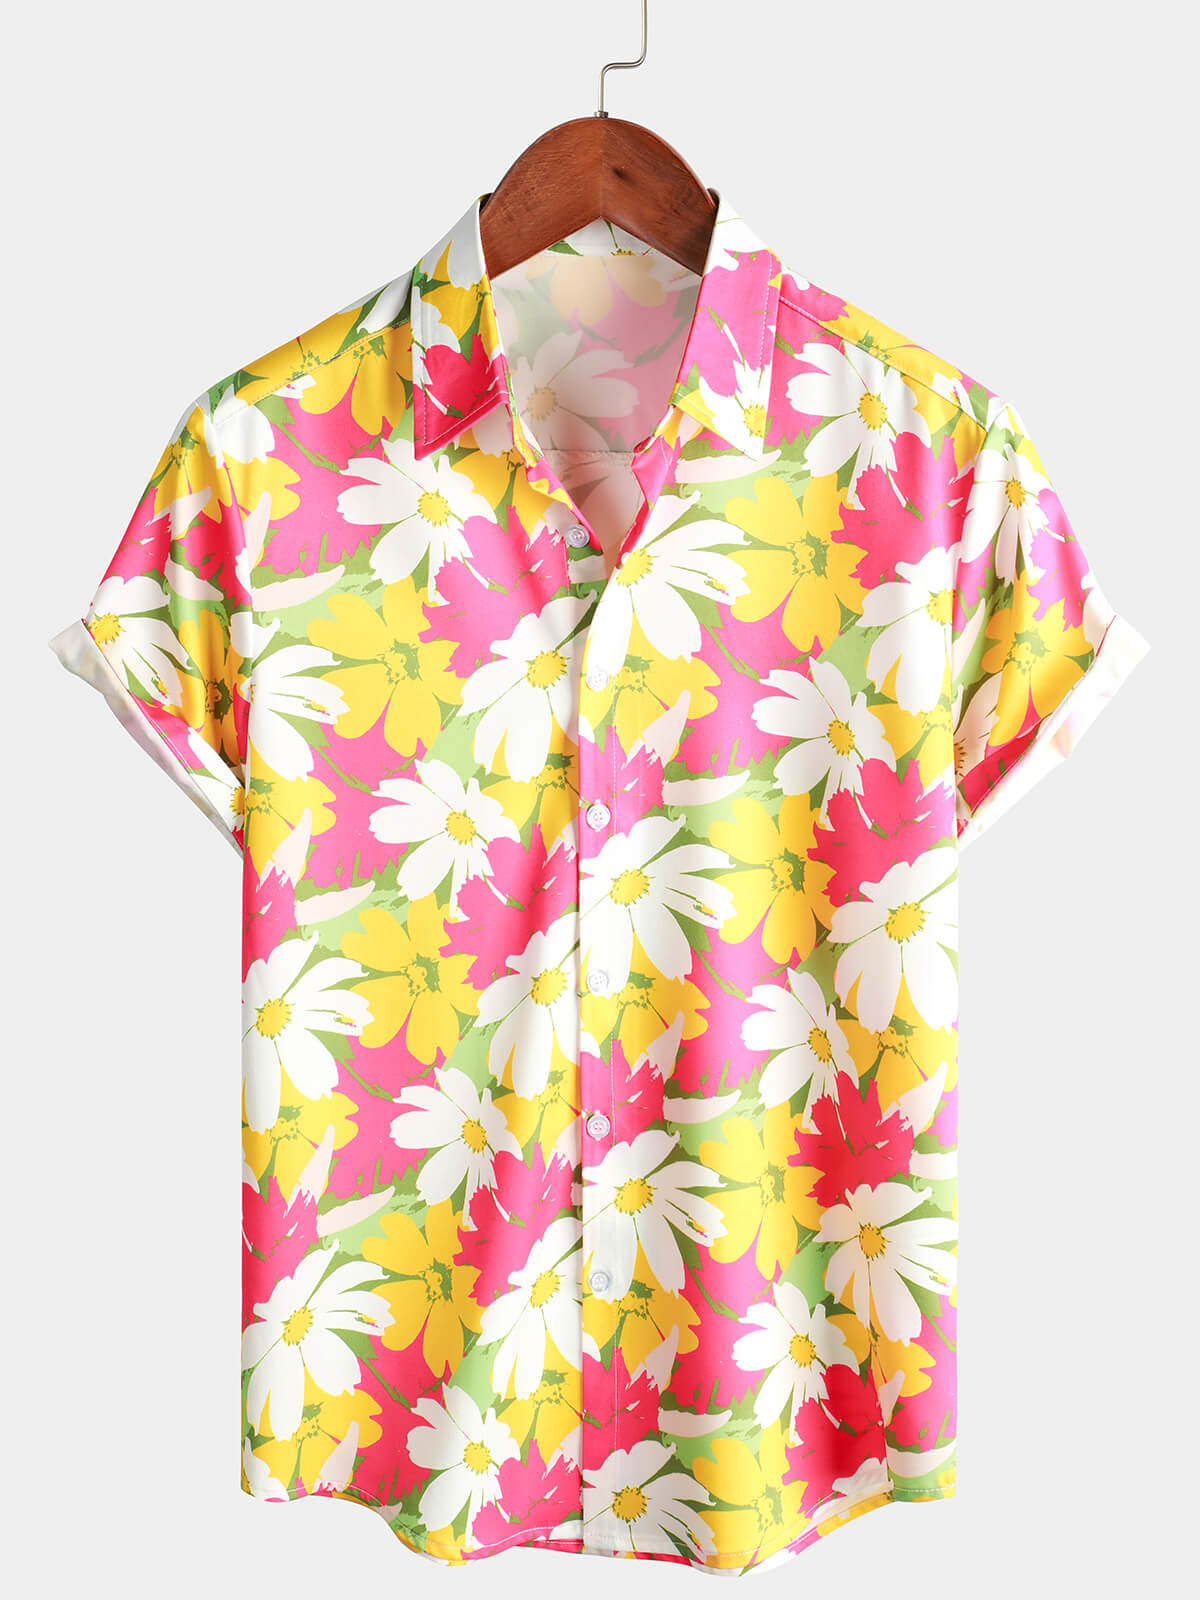 Men's Floral Print Yellow and Pink Flower Short Sleeve Beach Button Up Hawaiian Shirt